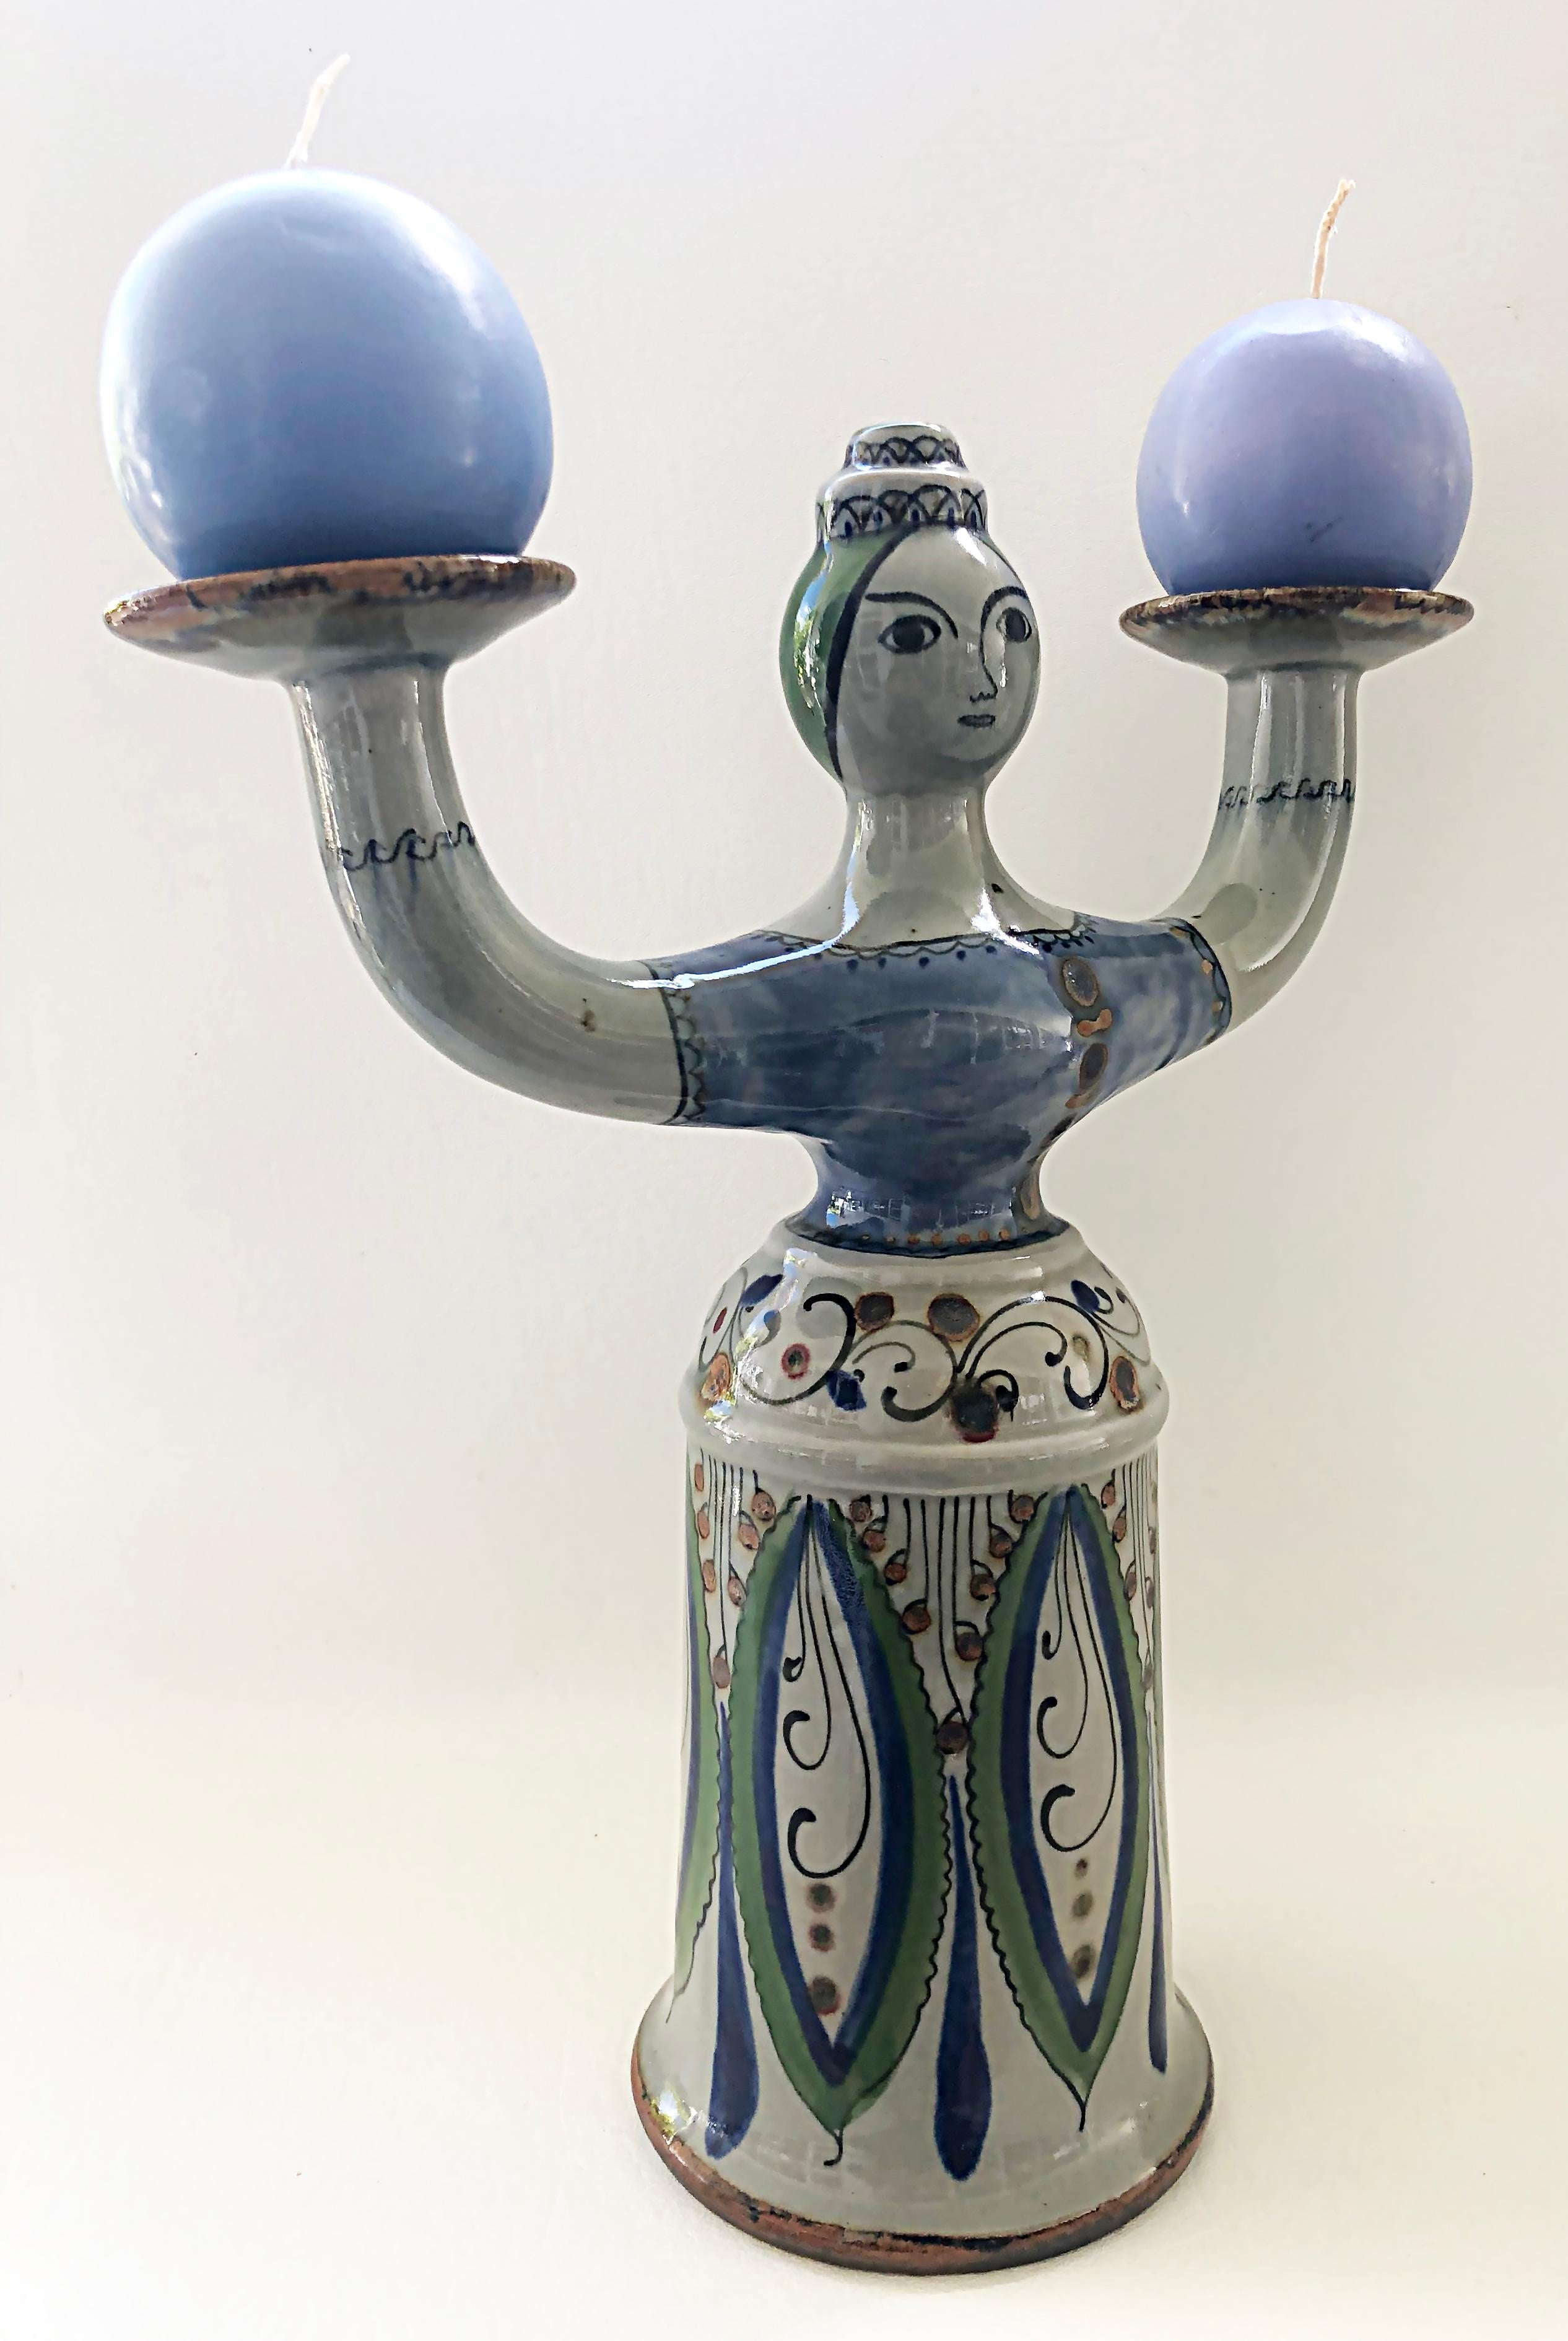 Mexikanischer handbemalter 2-armiger Tonala-Keramik-Kandelaber, signiert.

Zum Verkauf steht ein zweiarmiger mexikanischer Tonala-Keramik-Kandelaber, der eine handbemalte Frau mit einem typisch bestickten Kleid und ausgestreckten Armen darstellt,